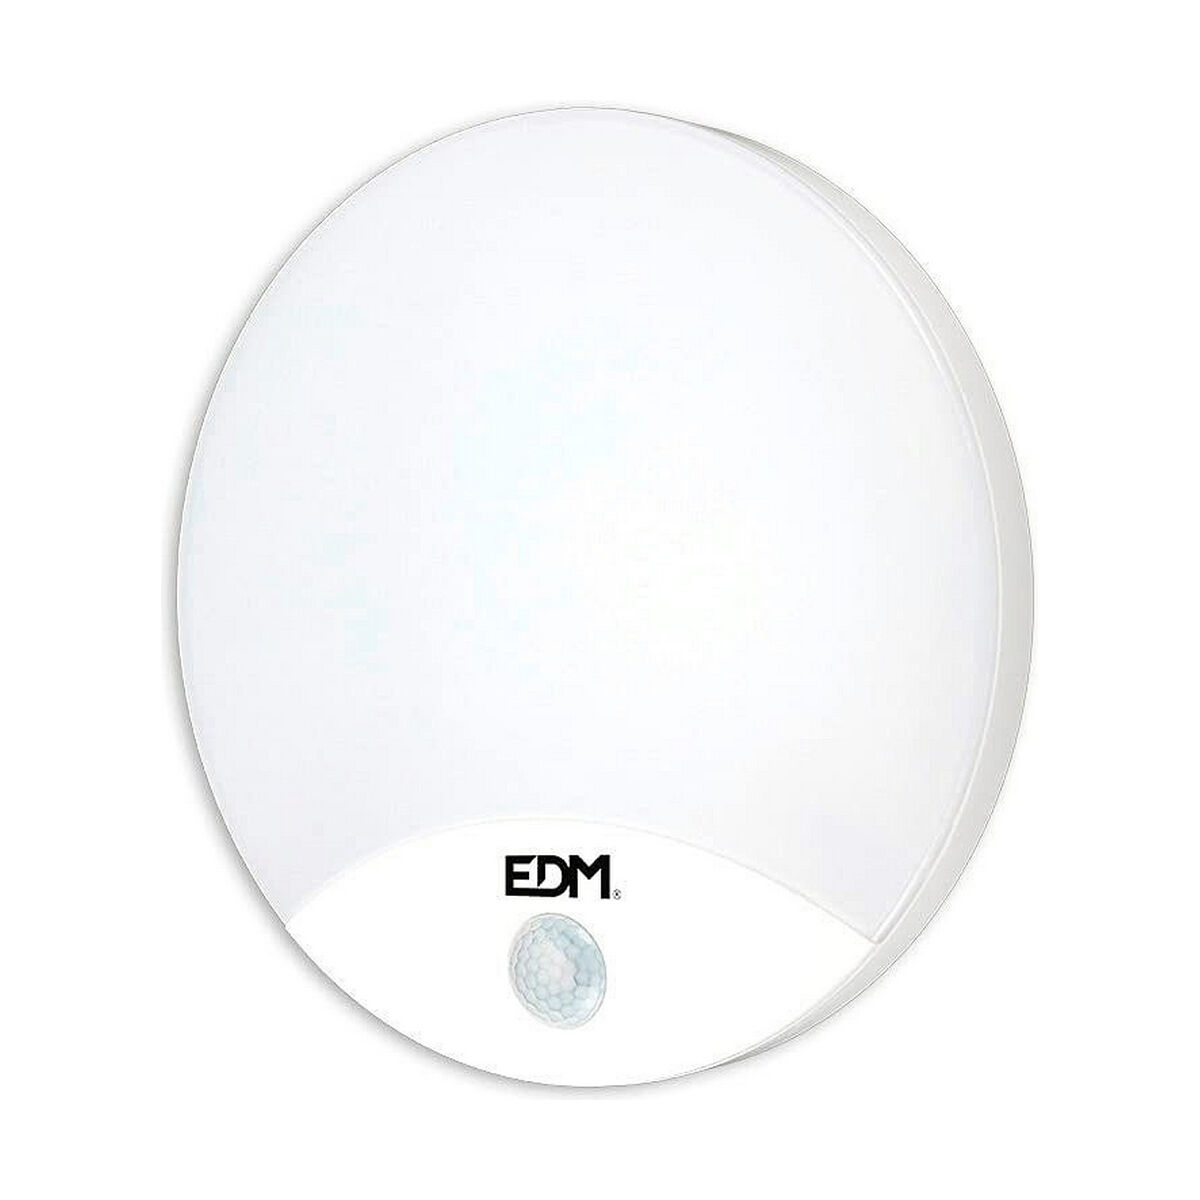 Applique LED EDM 1850 Lm Bianco Multicolore 15 W 1250 Lm (4000 K)